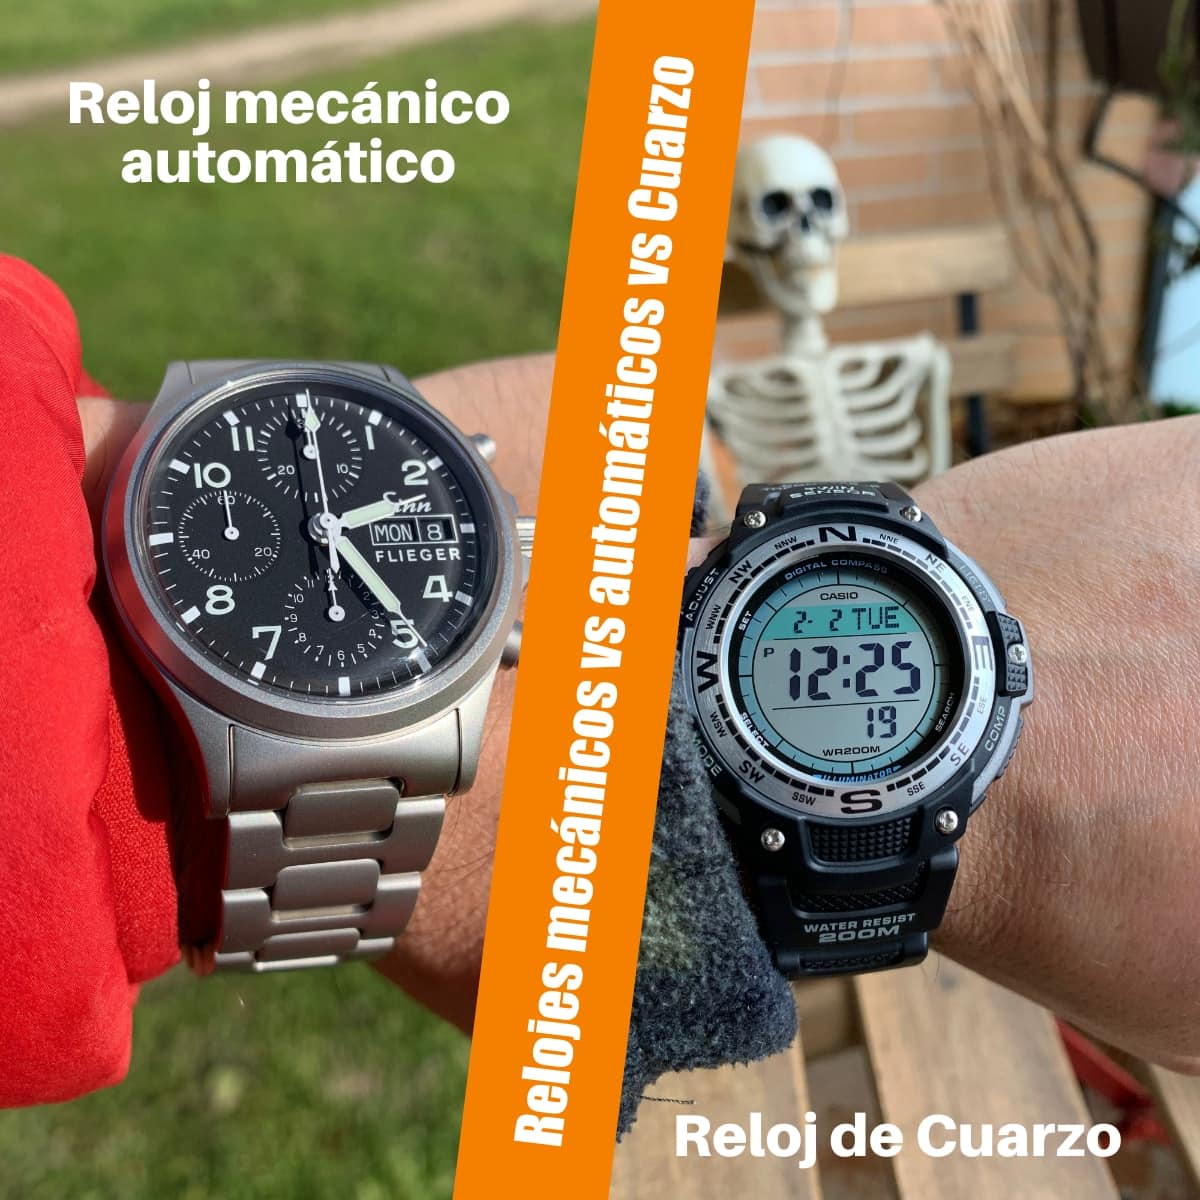 Relojes mecánicos vs automáticos vs Cuarzo: ¿Qué tipo de reloj es mejor para ti?